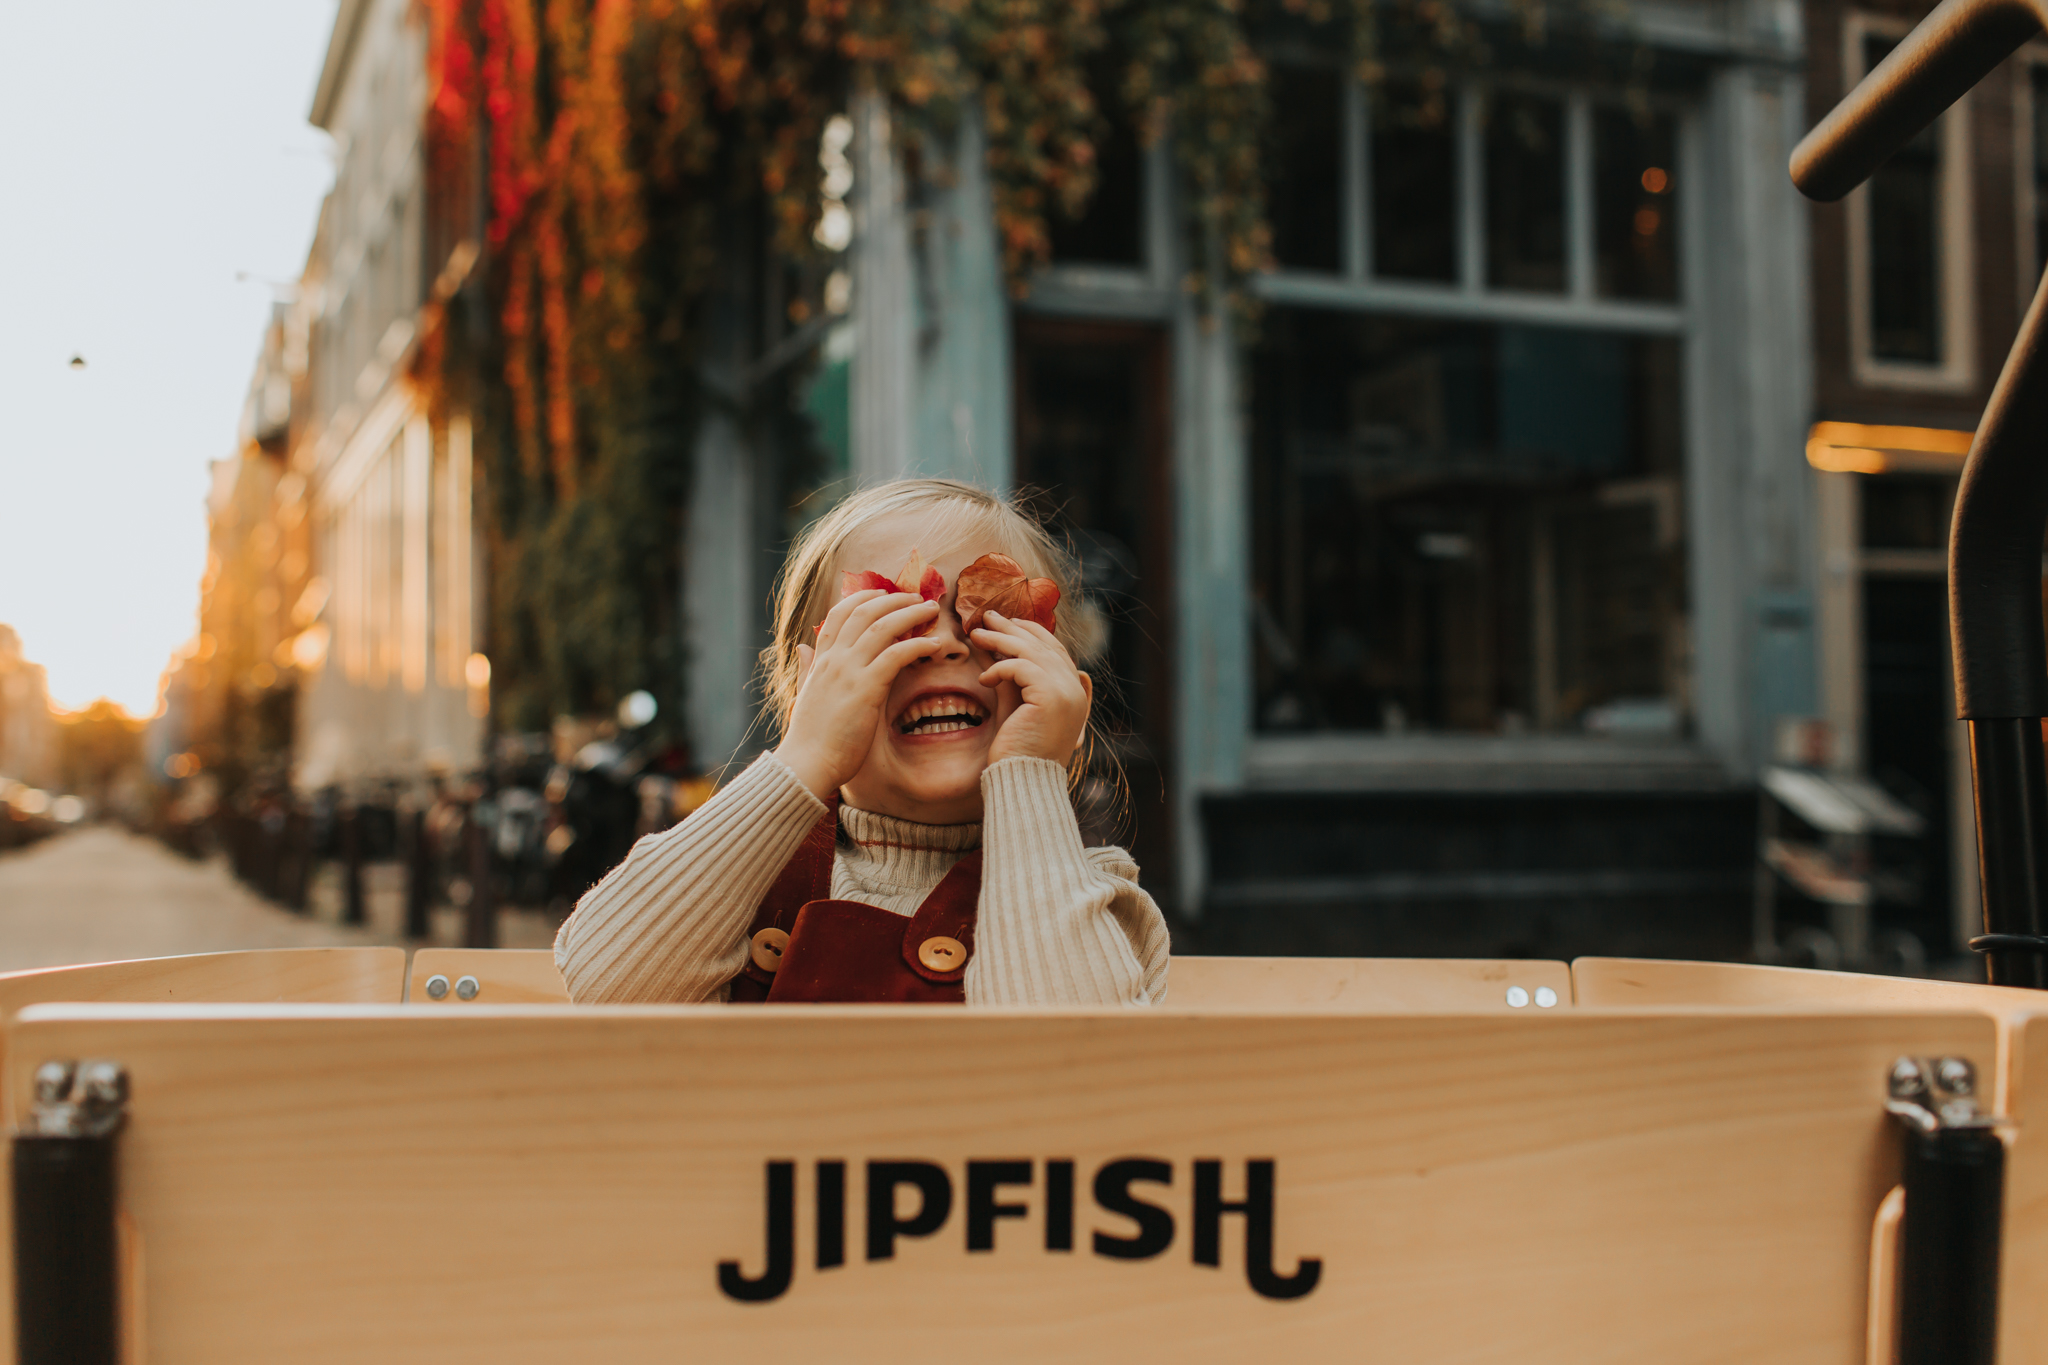 Jipfish-Fall-22.jpg